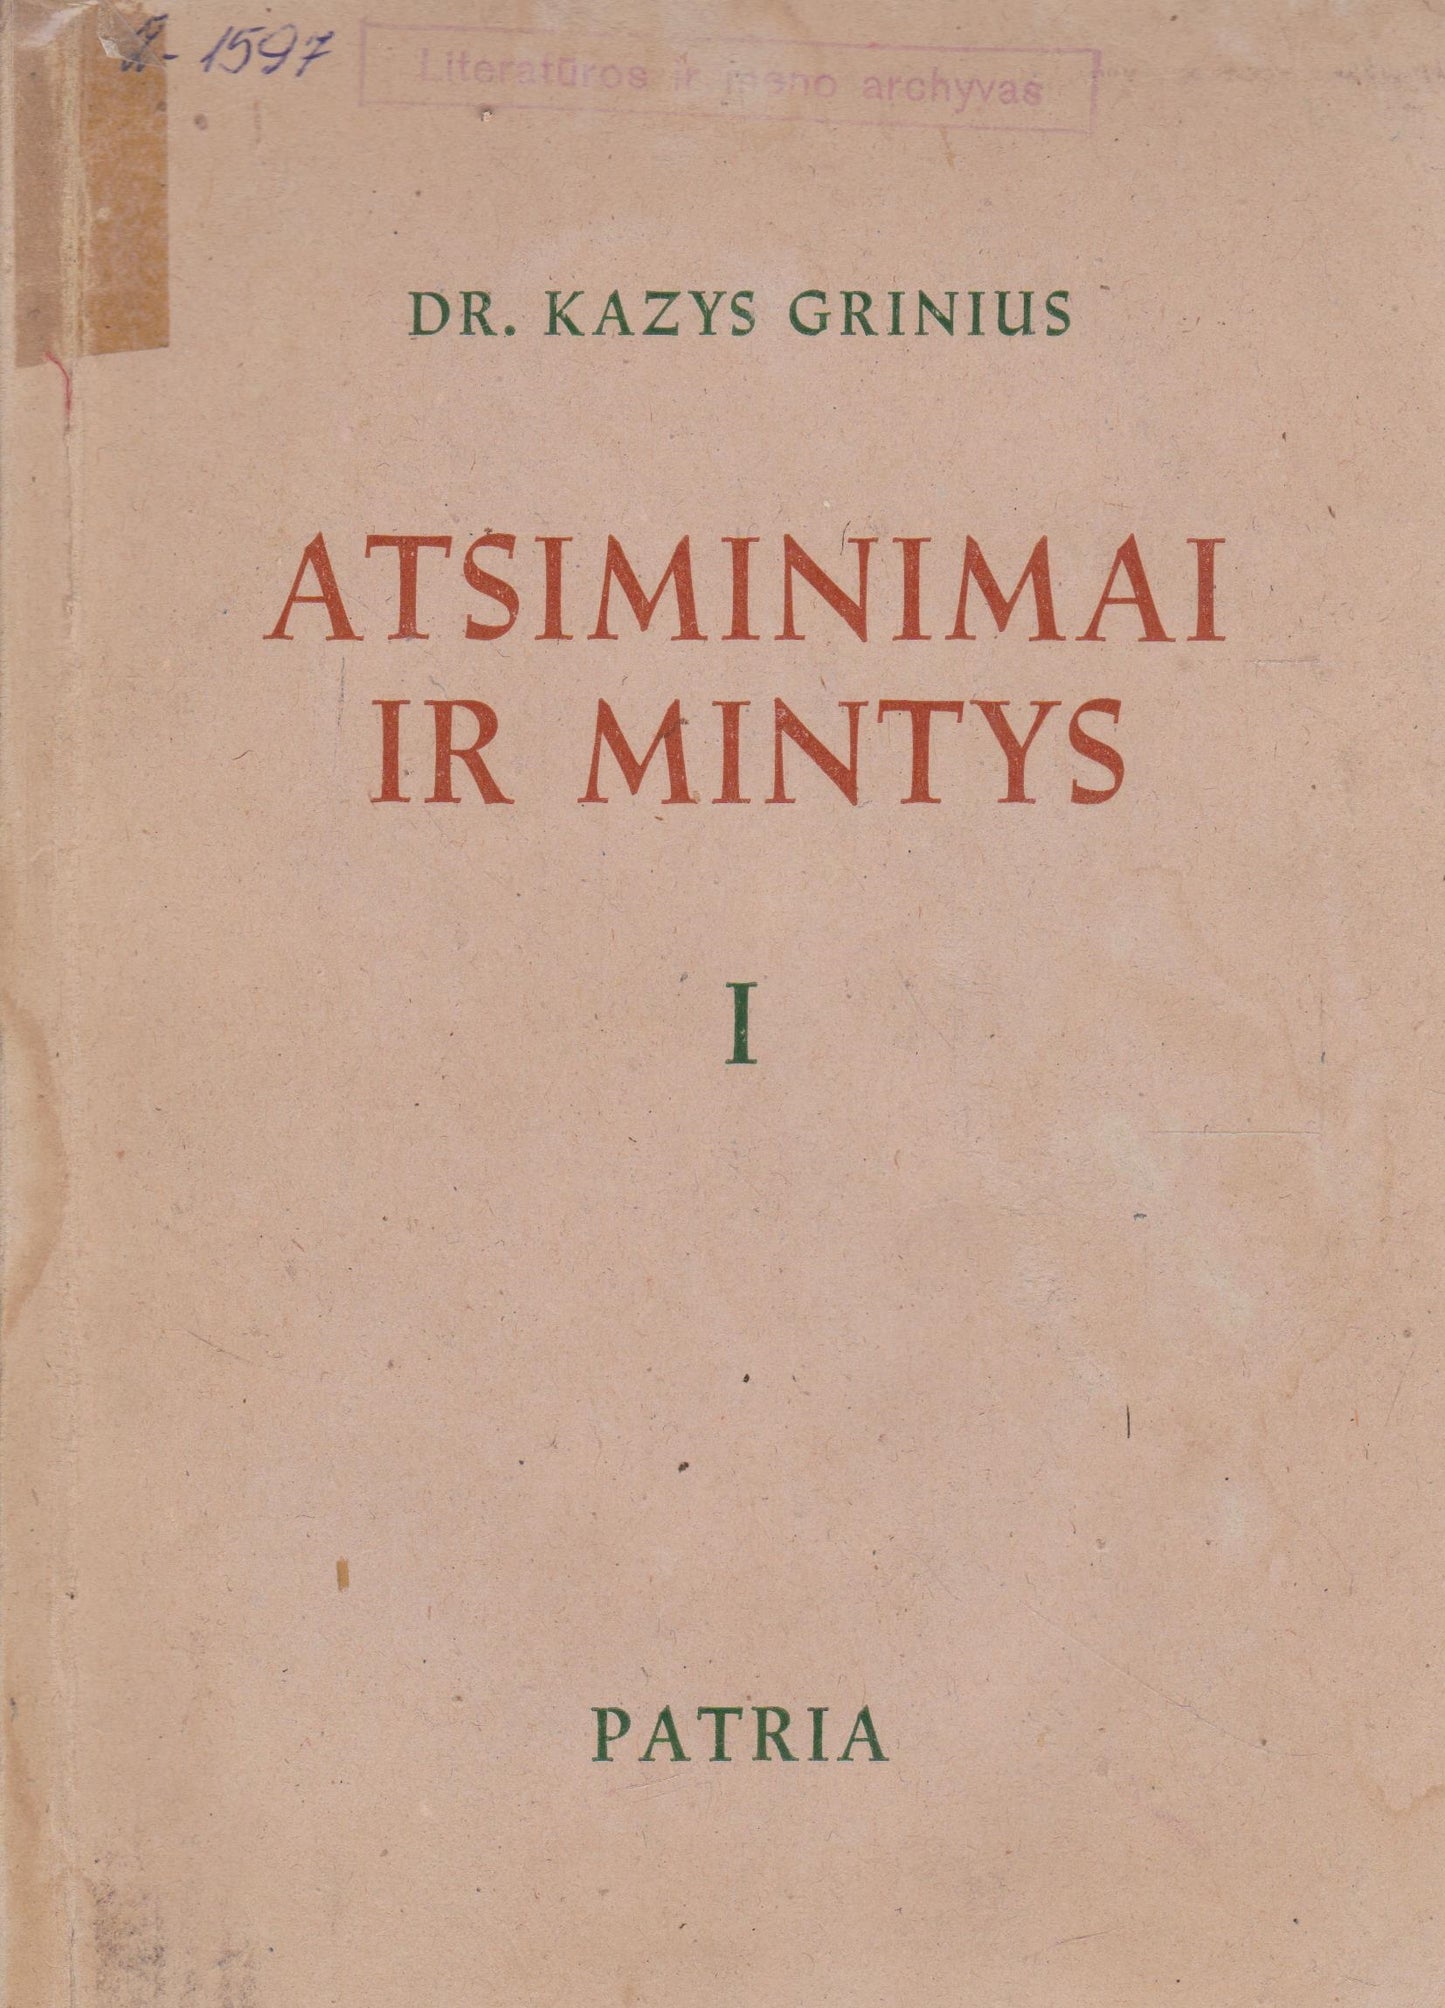 Kazys Grinius - Atsiminimai ir mintys, 1947, Tübingen